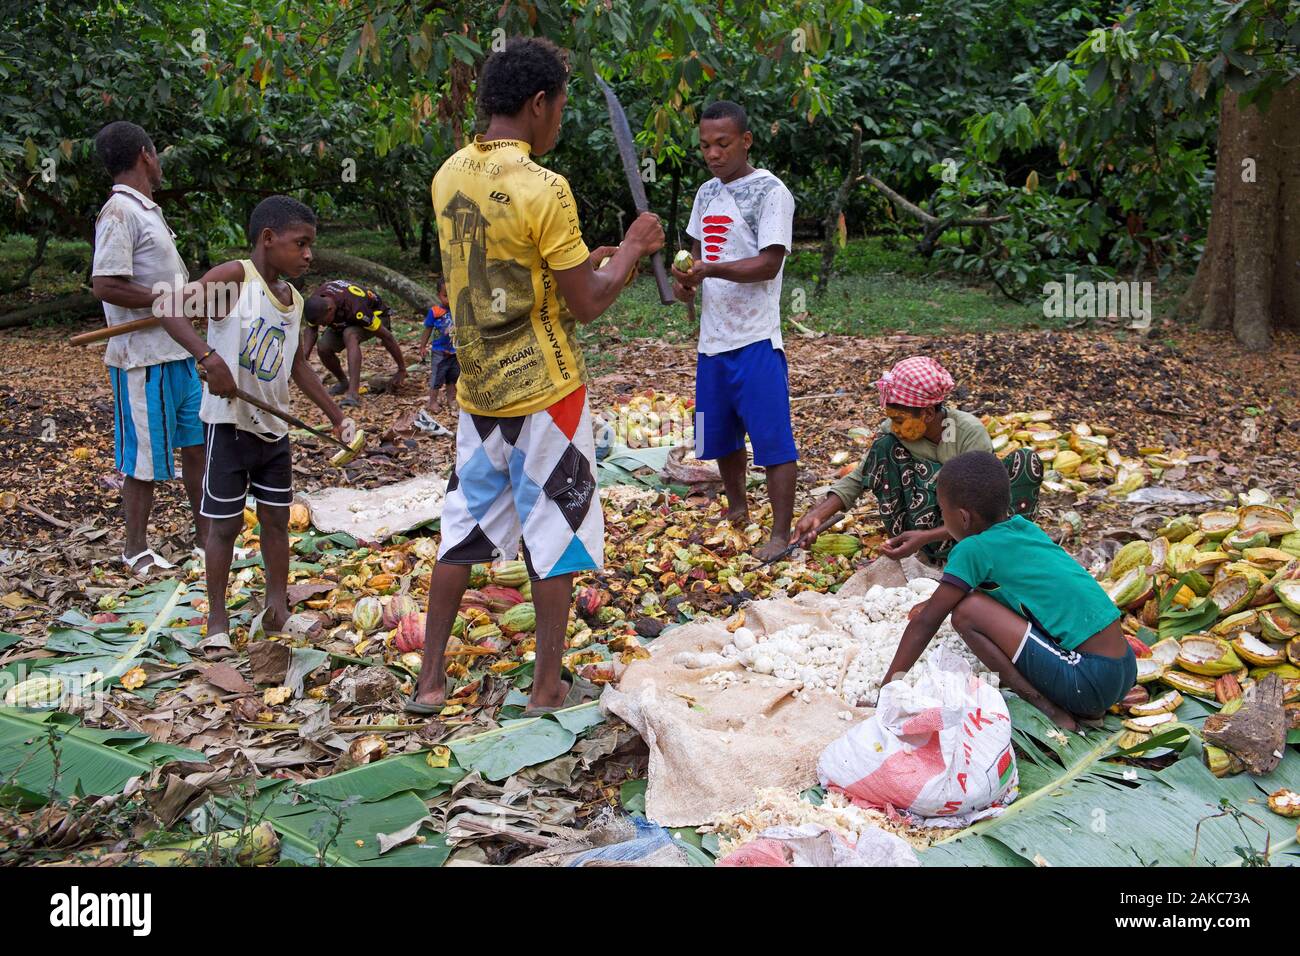 Madagascar, Antsiranana, Ankify, harvest of cocoa pods Stock Photo